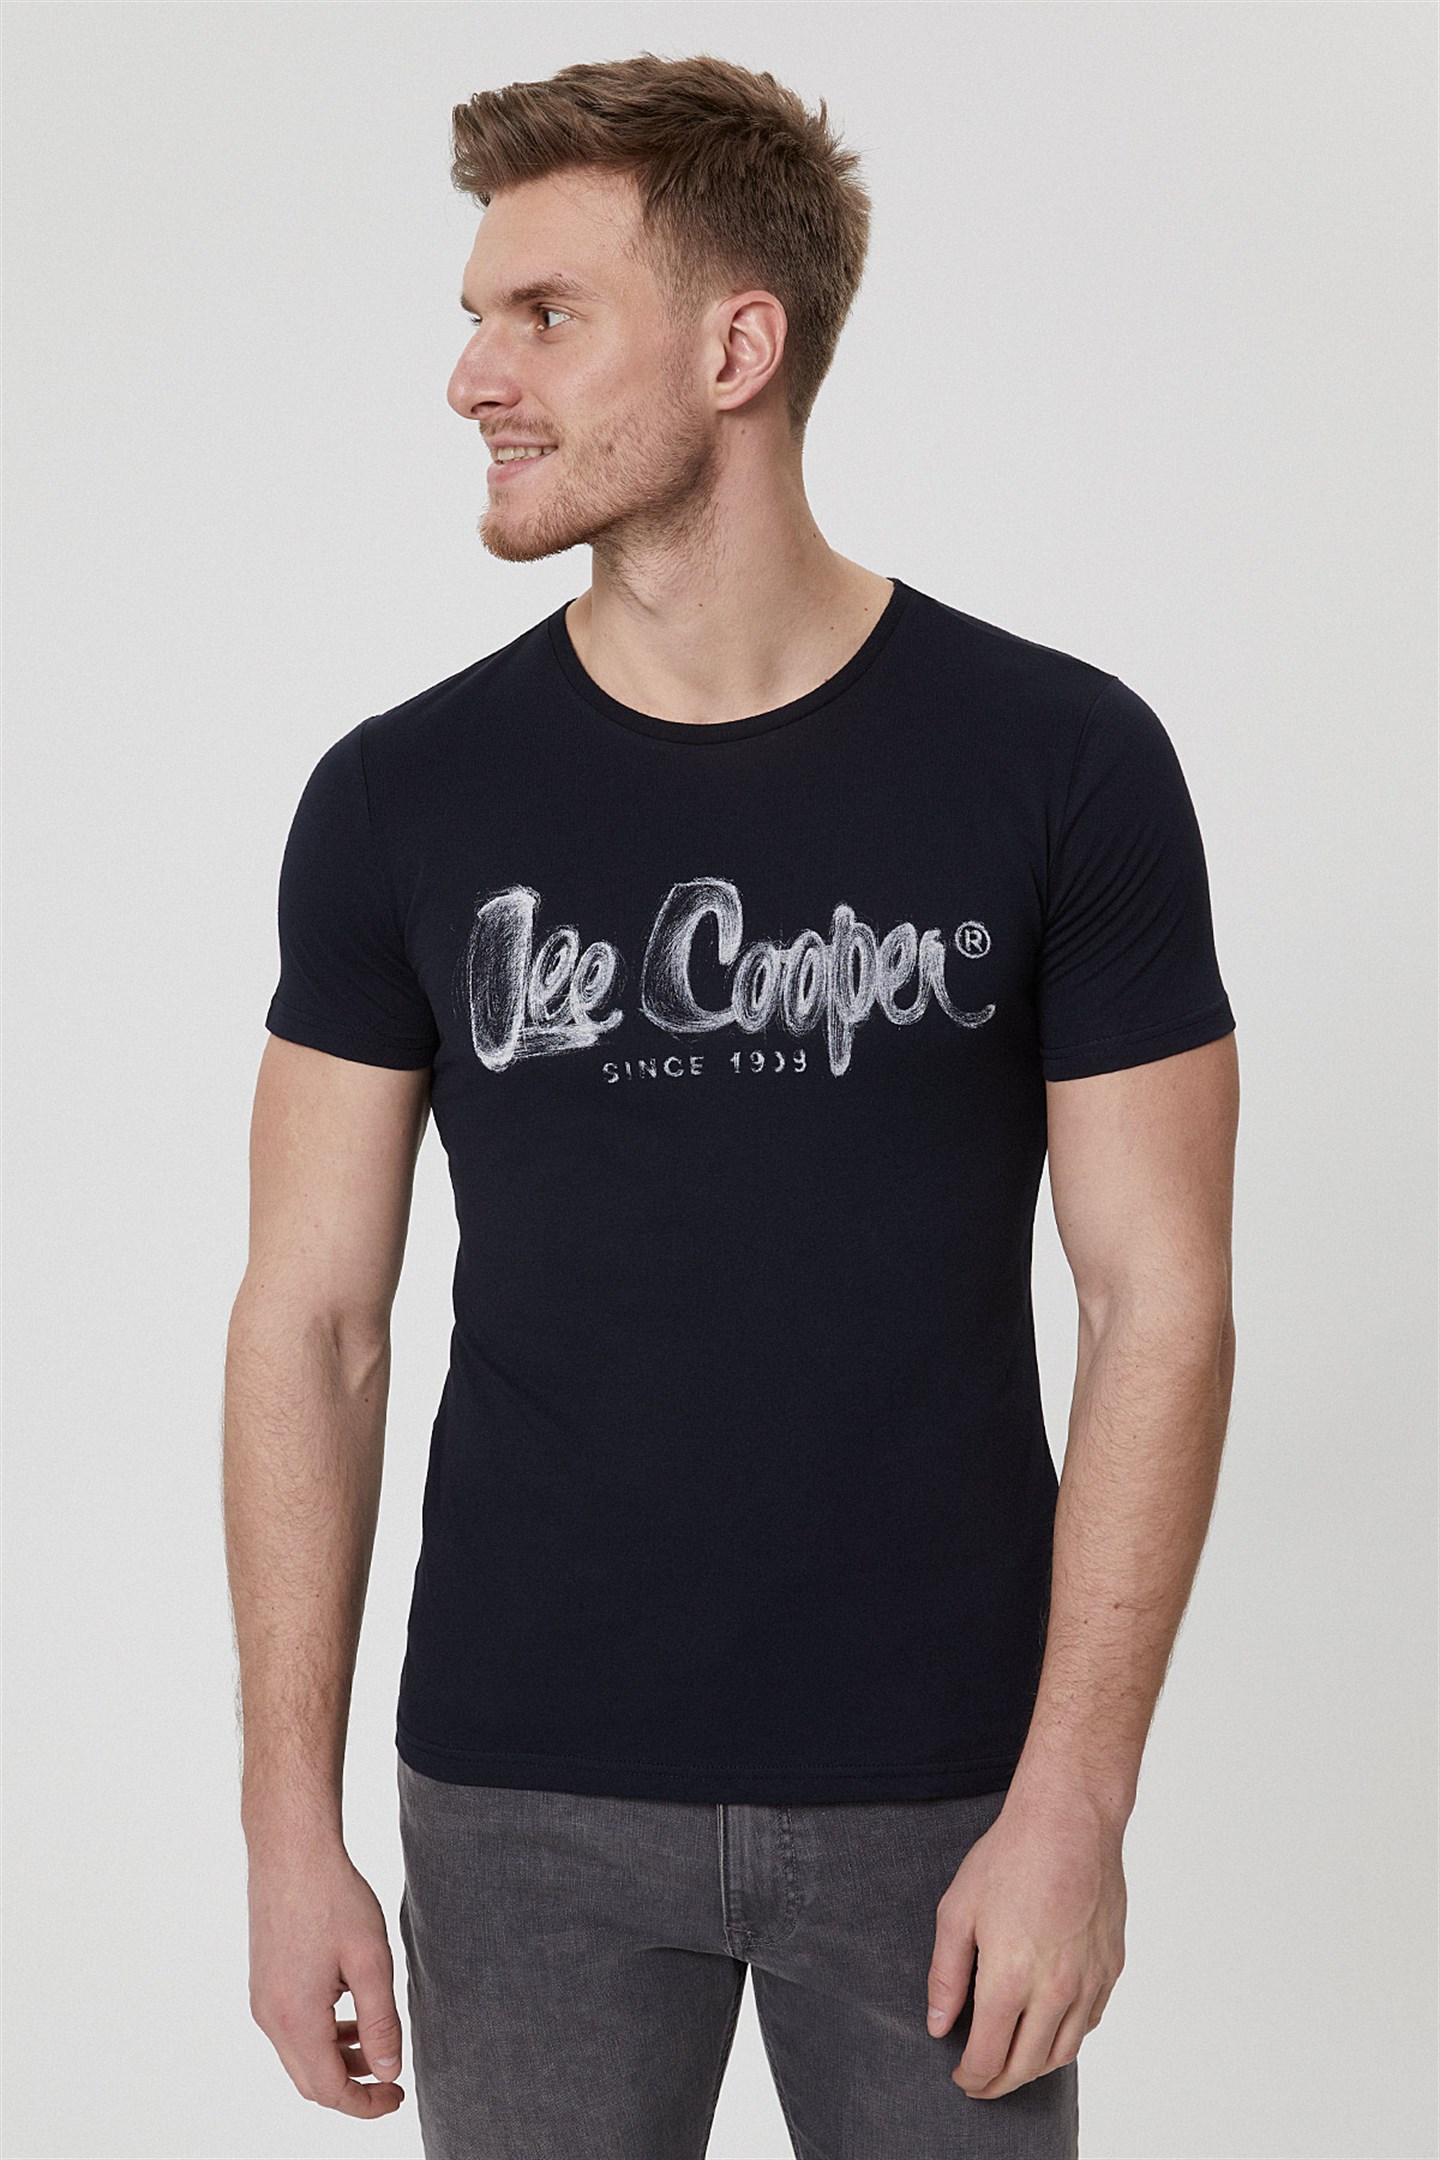 Lee Cooper Drawinglogo Erkek Bisiklet Yaka T-Shirt Koyu Sarı. 1